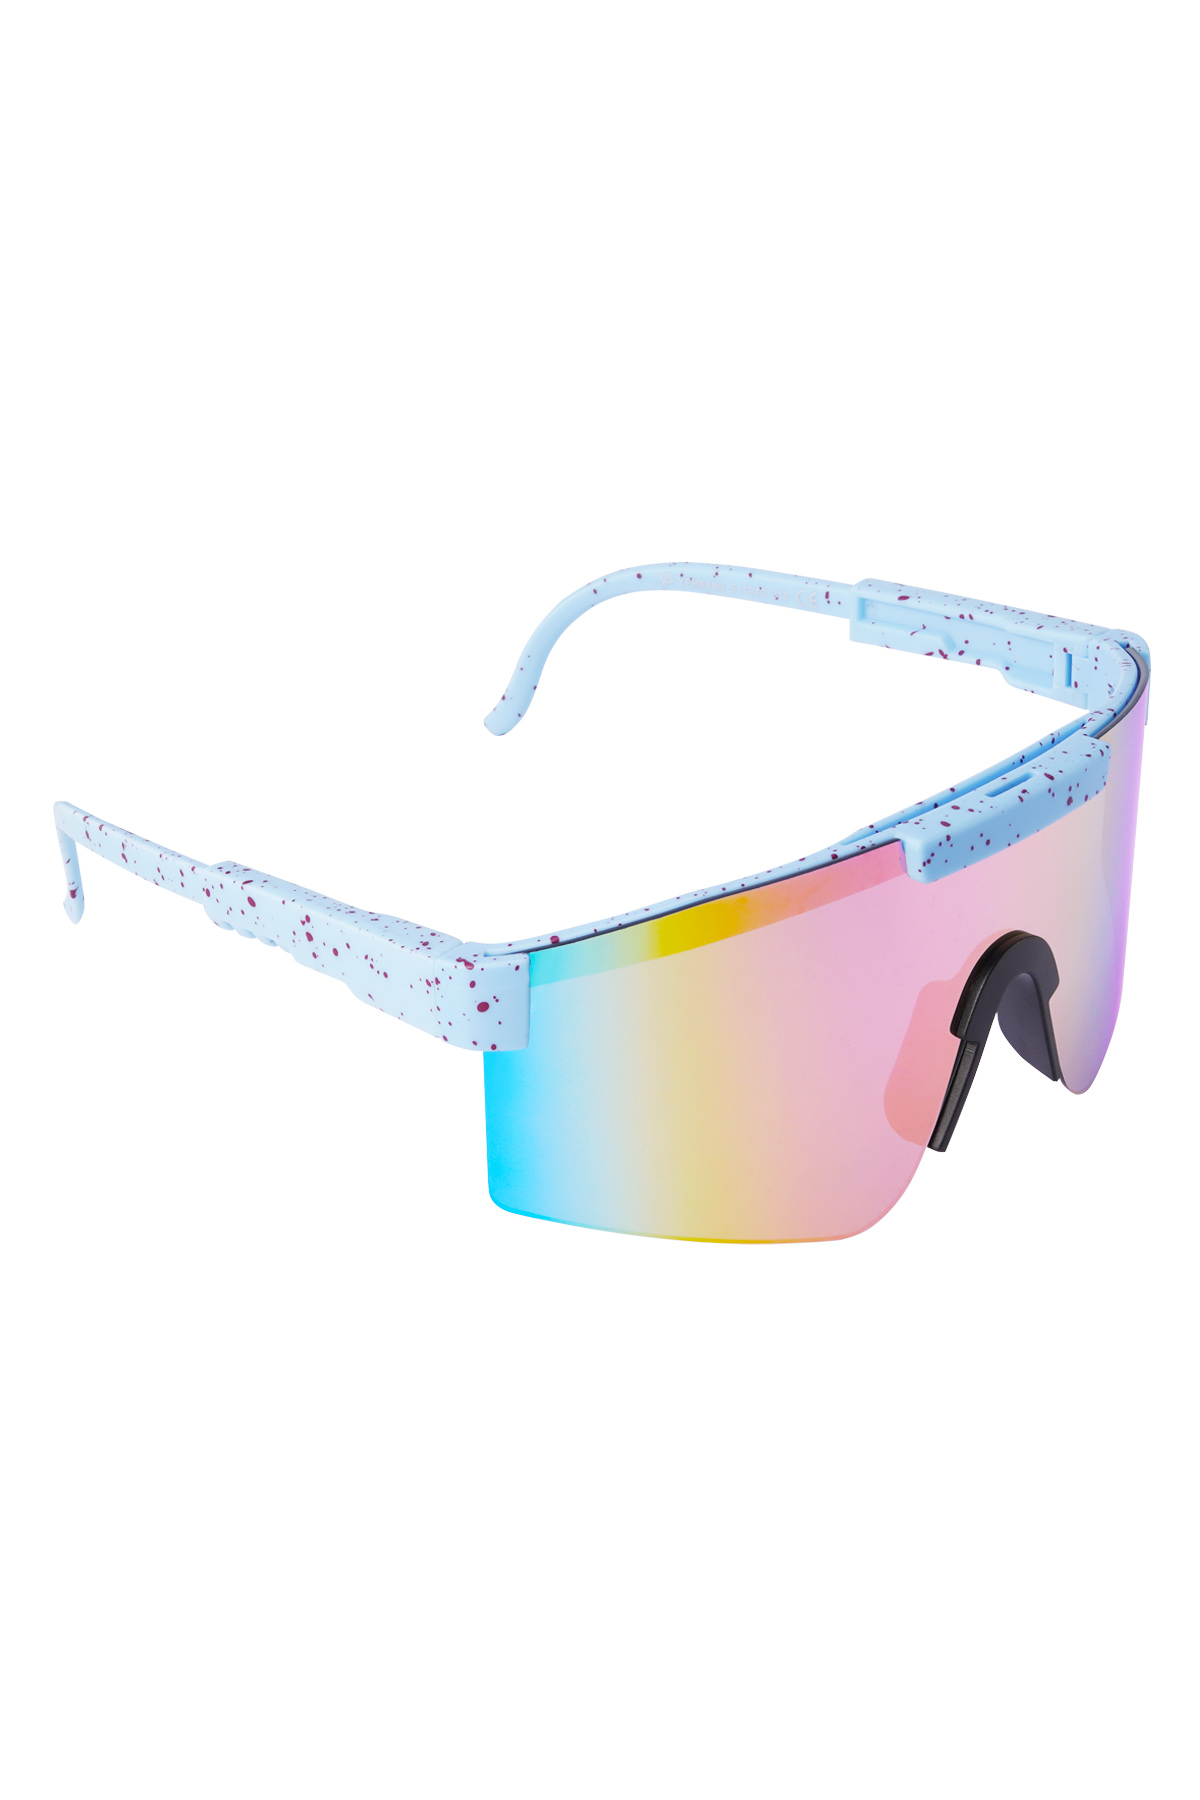 Güneş gözlüğü baskılı renkli lensler - mavi h5 